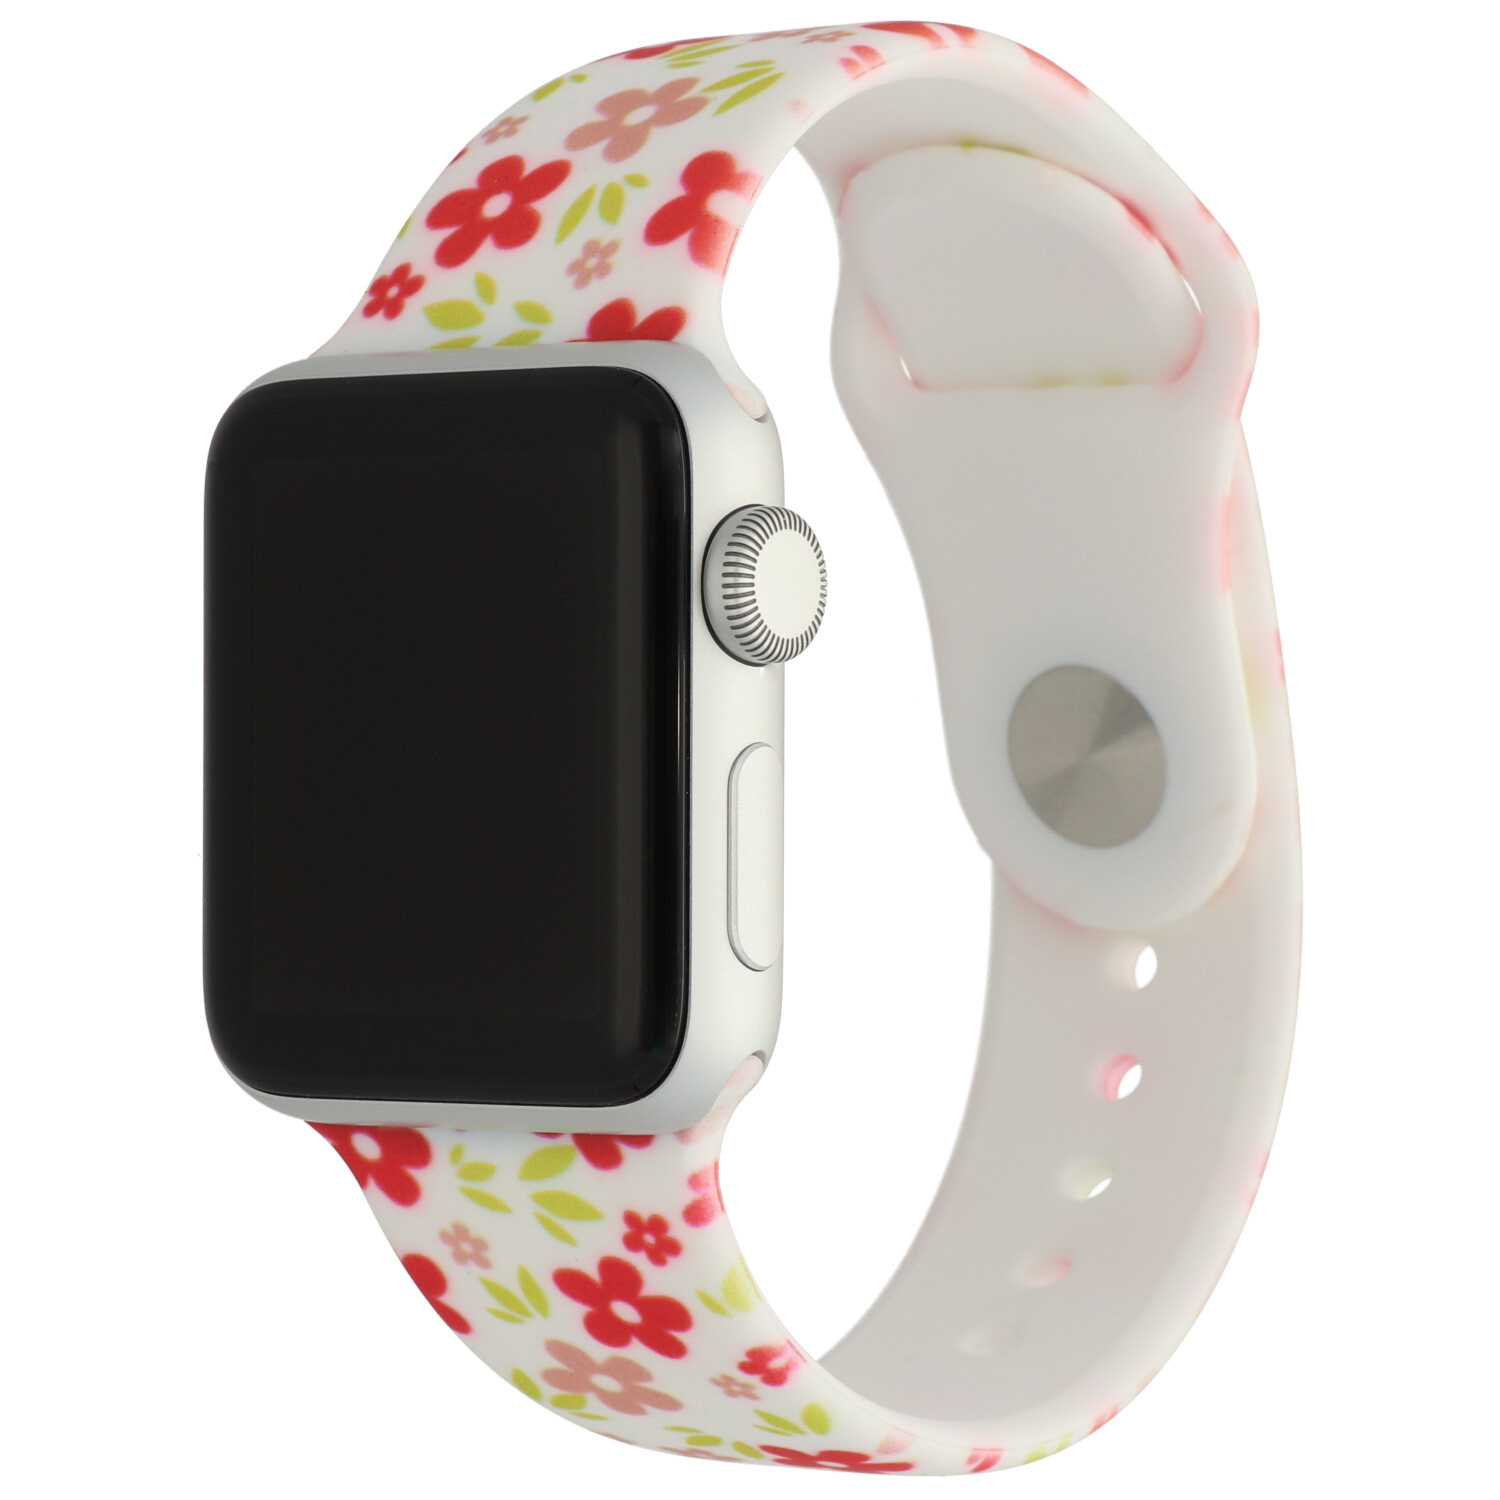 Bracelet sport imprimé Apple Watch - fleurs rouges